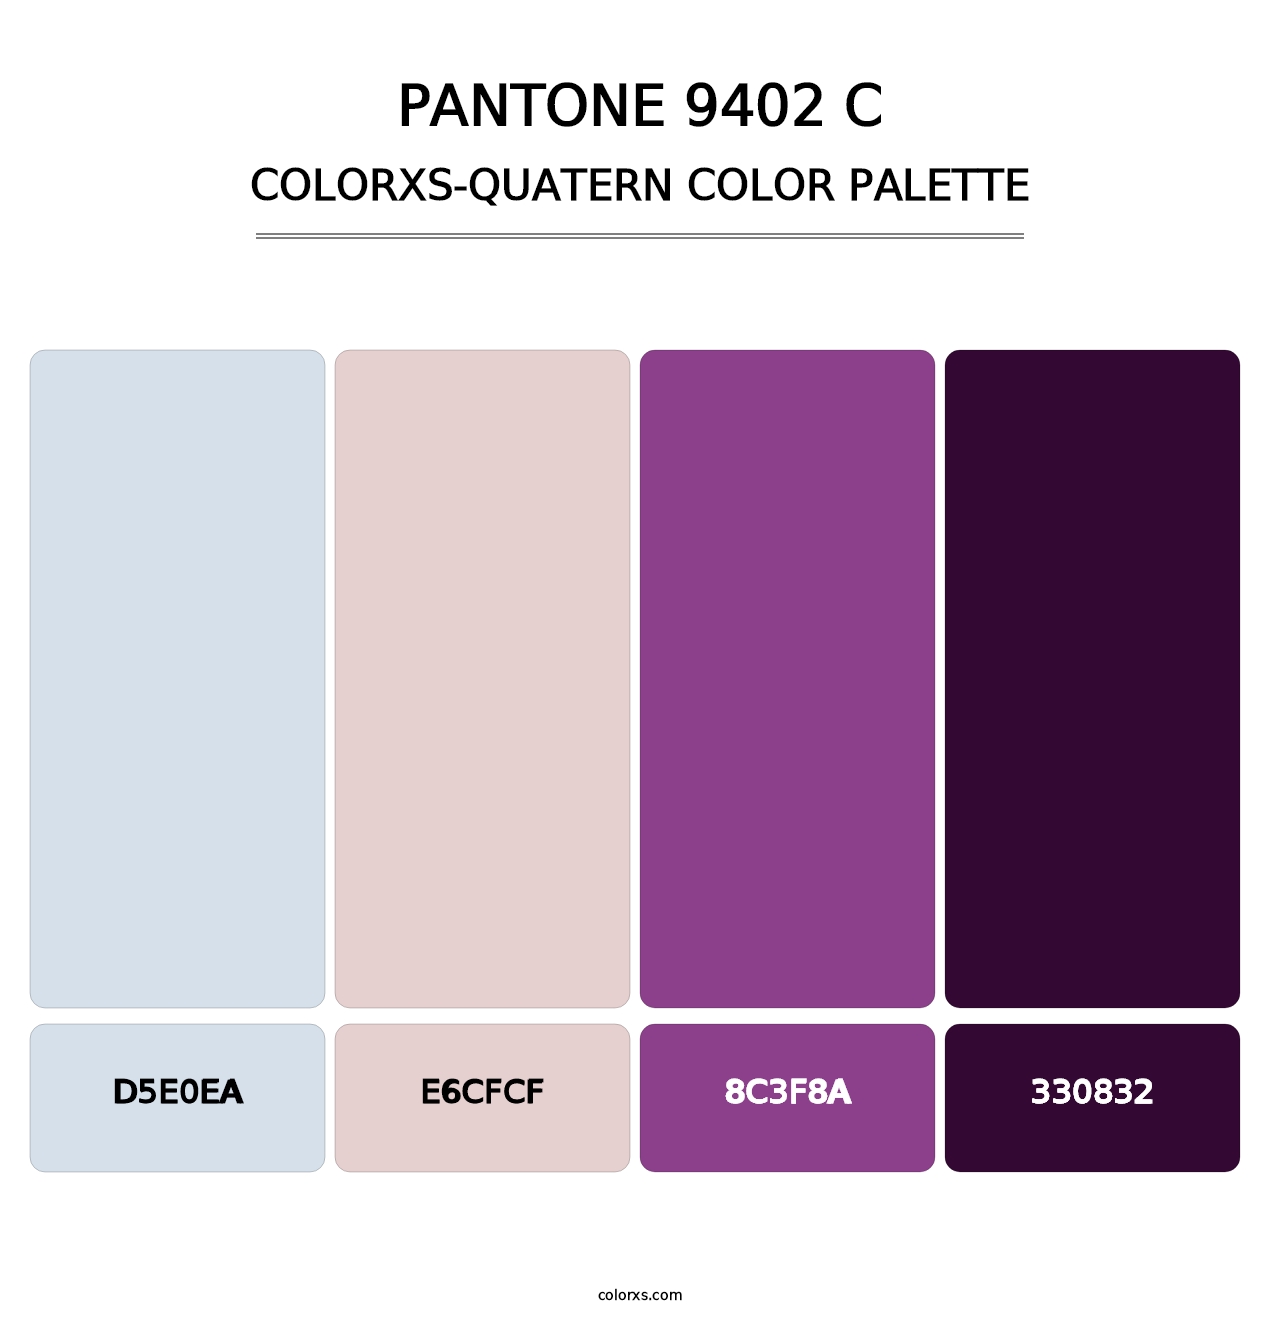 PANTONE 9402 C - Colorxs Quatern Palette